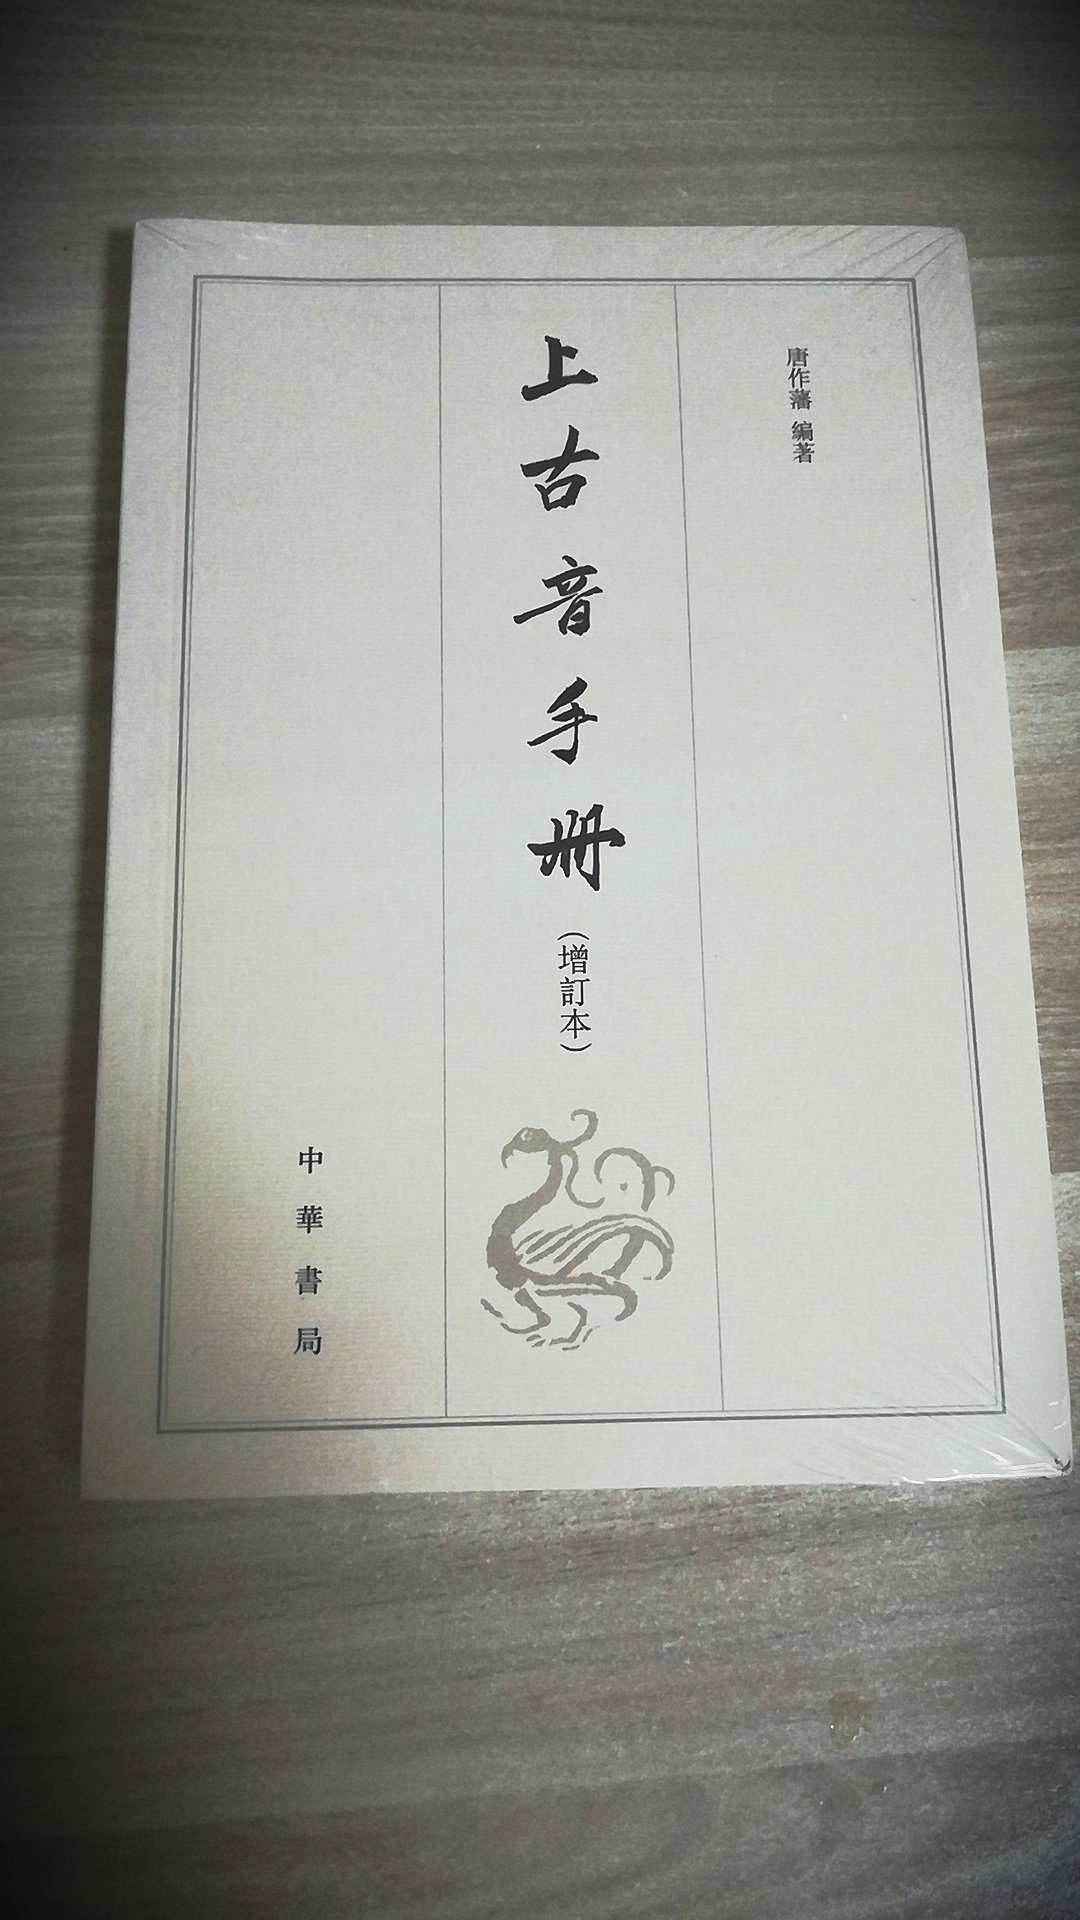 汉语言文学特别是音韵学专业的同学，这本书对你会很有用处。还没拆封，不过我相信中华书局的品质！期待中！